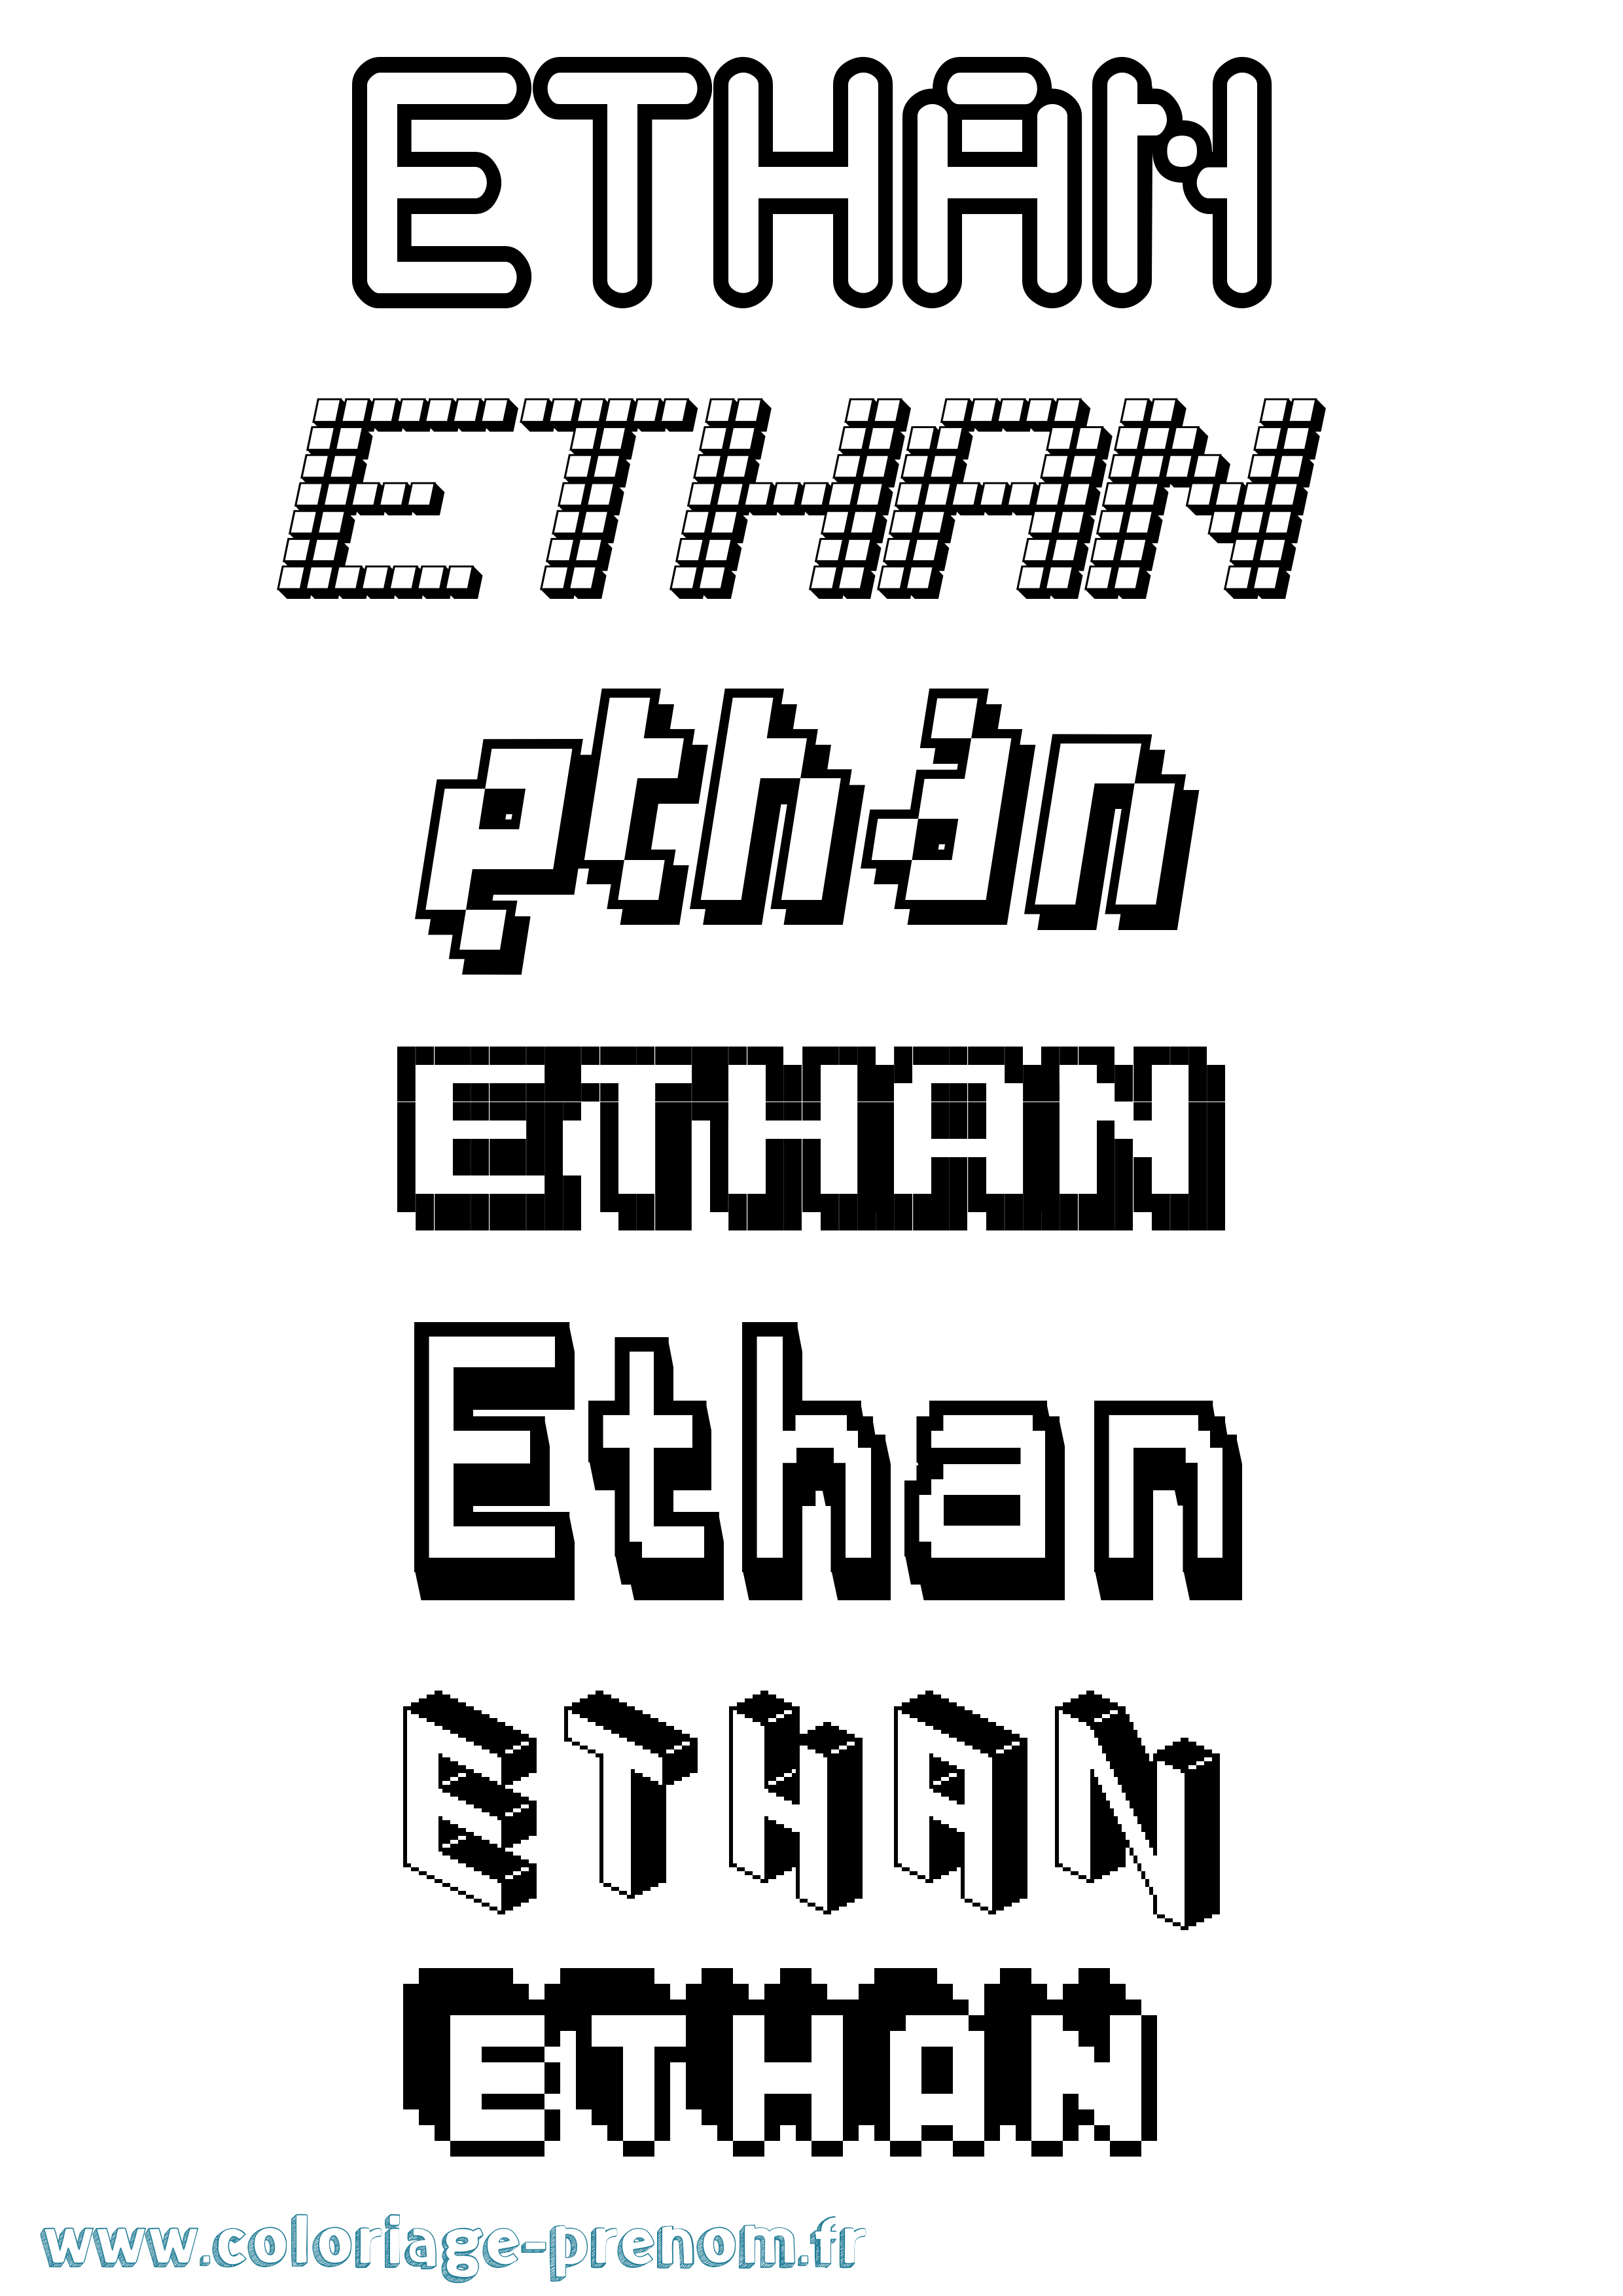 Coloriage prénom Ethan Pixel